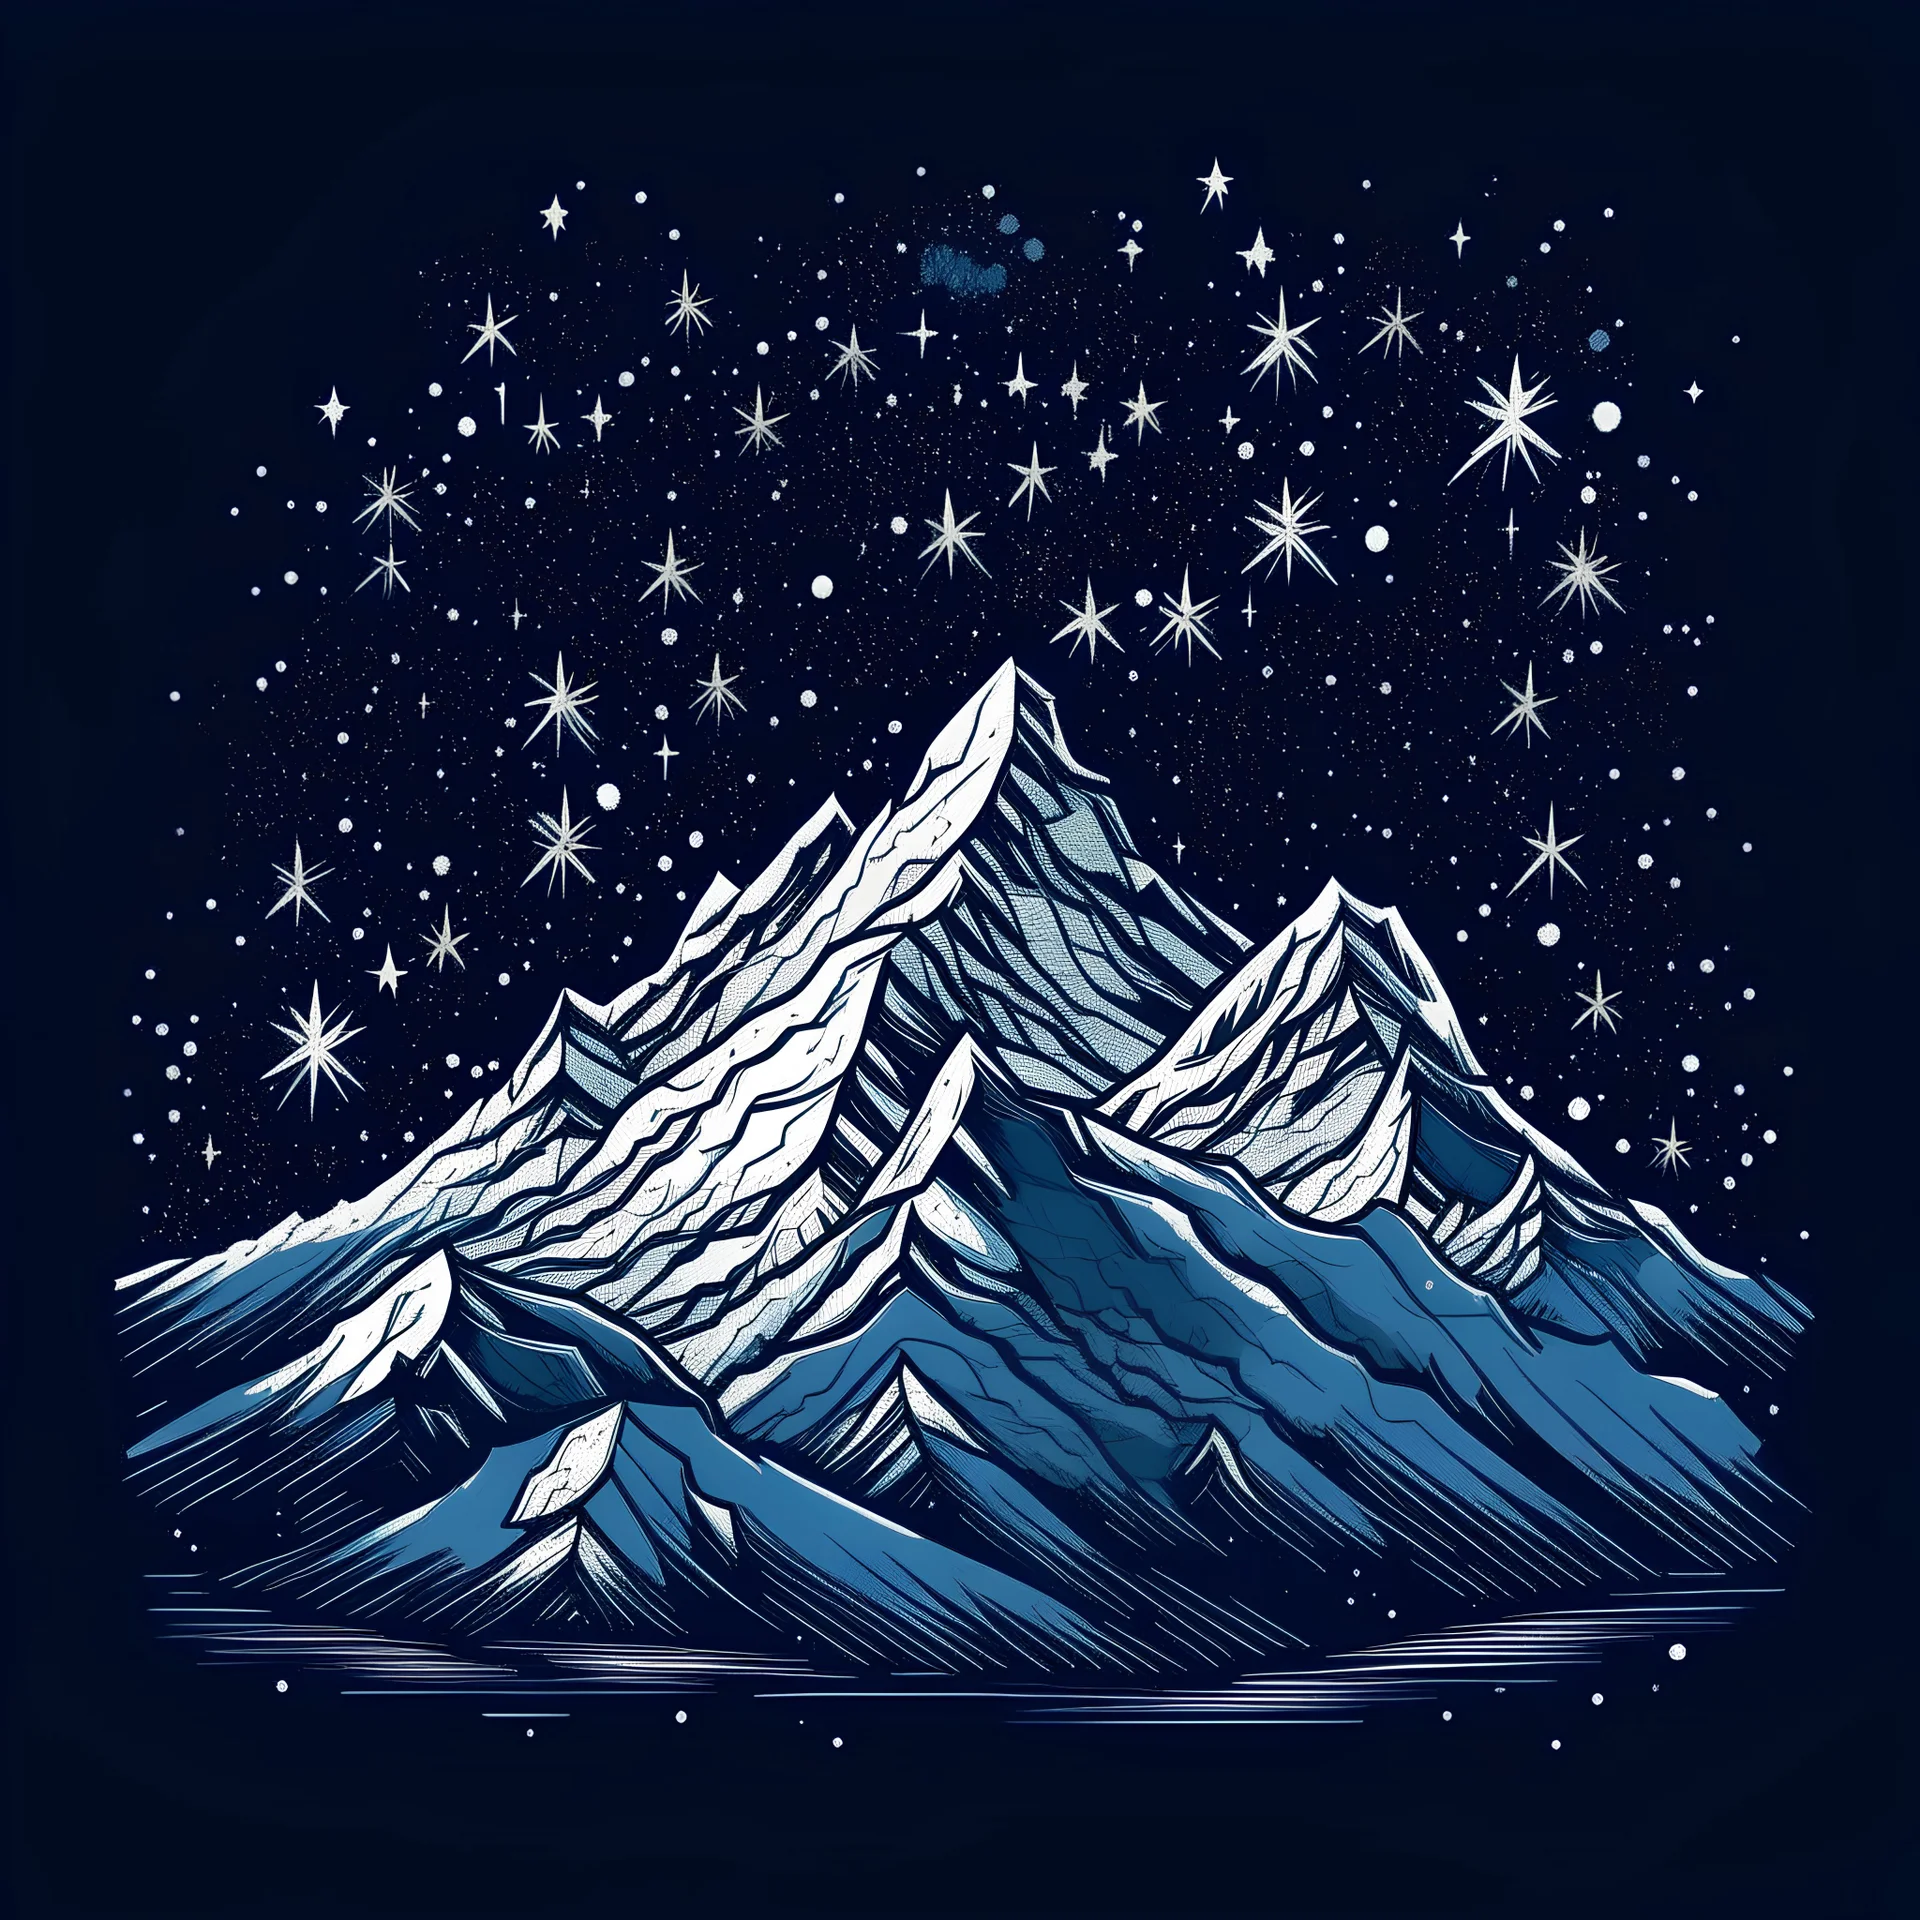 اروع جبل ثلج نجوم منسب لتيشيرت